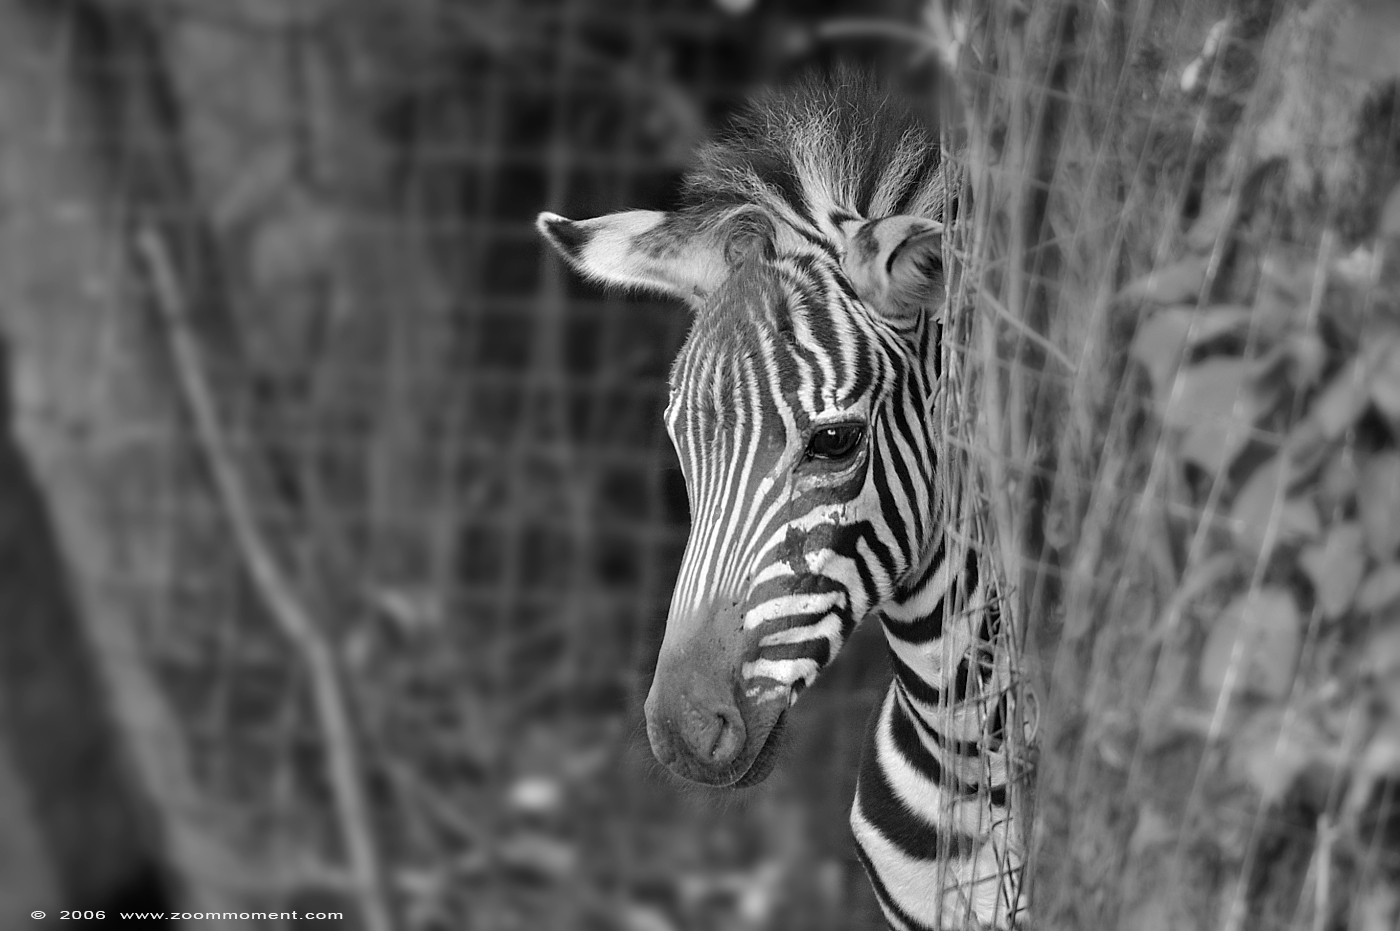 Grant or Böhm zebra  ( Equus quagga boehmi )
Trefwoorden: Aachen Aken zoo Grant&#039;s zebra Equus quagga boehmi Grant zebra Böhm